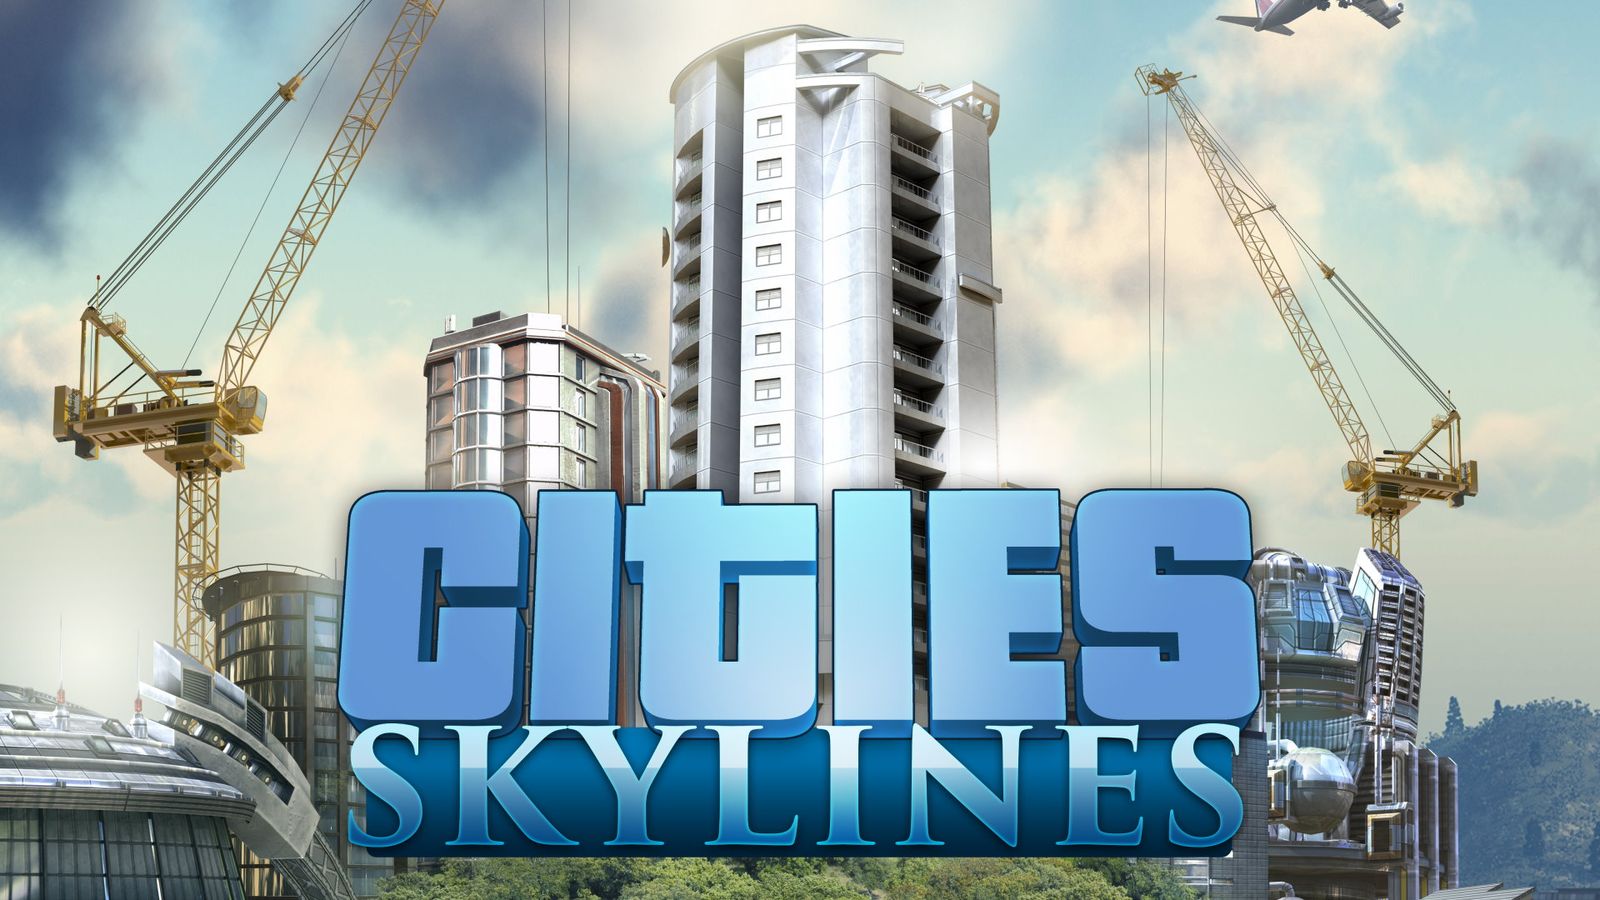 Cities Skylines: Alle Erweiterungen in der Übersicht